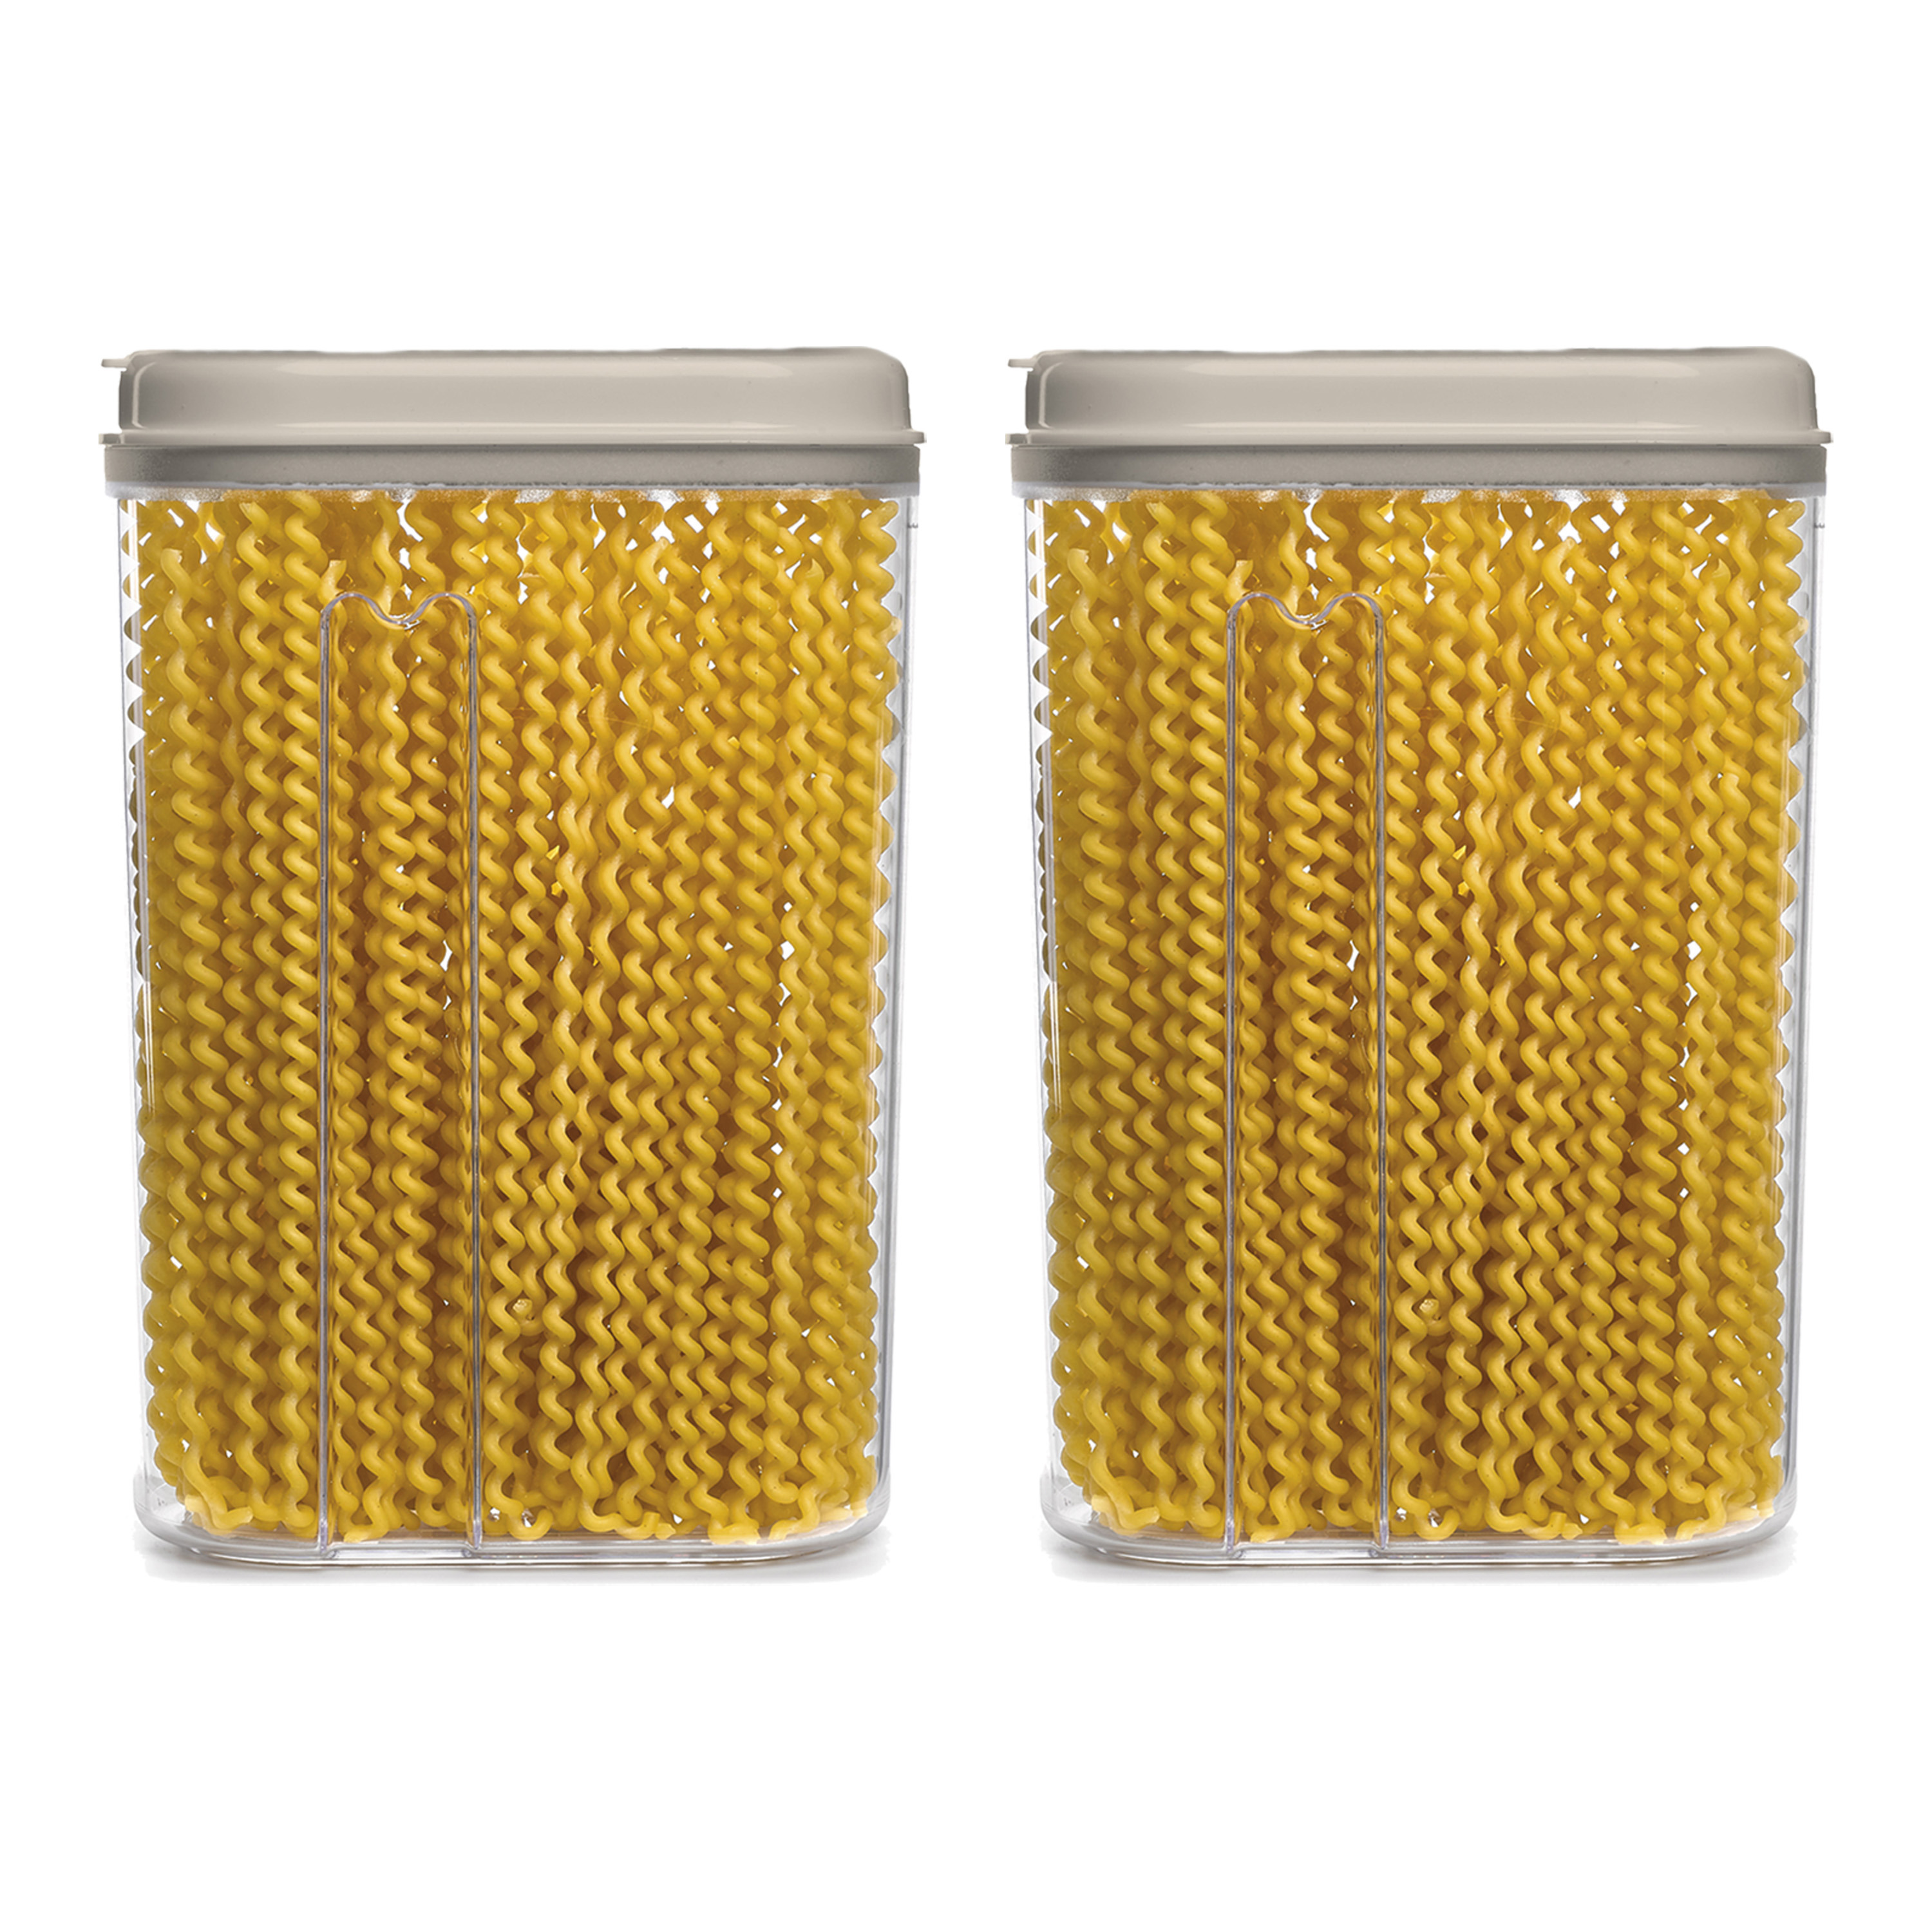 PlasticForte Voedselcontainer strooibus - 2x - beige - 1500 ml - kunststof - 15 x 8 x 23 cm - voorraadpot -